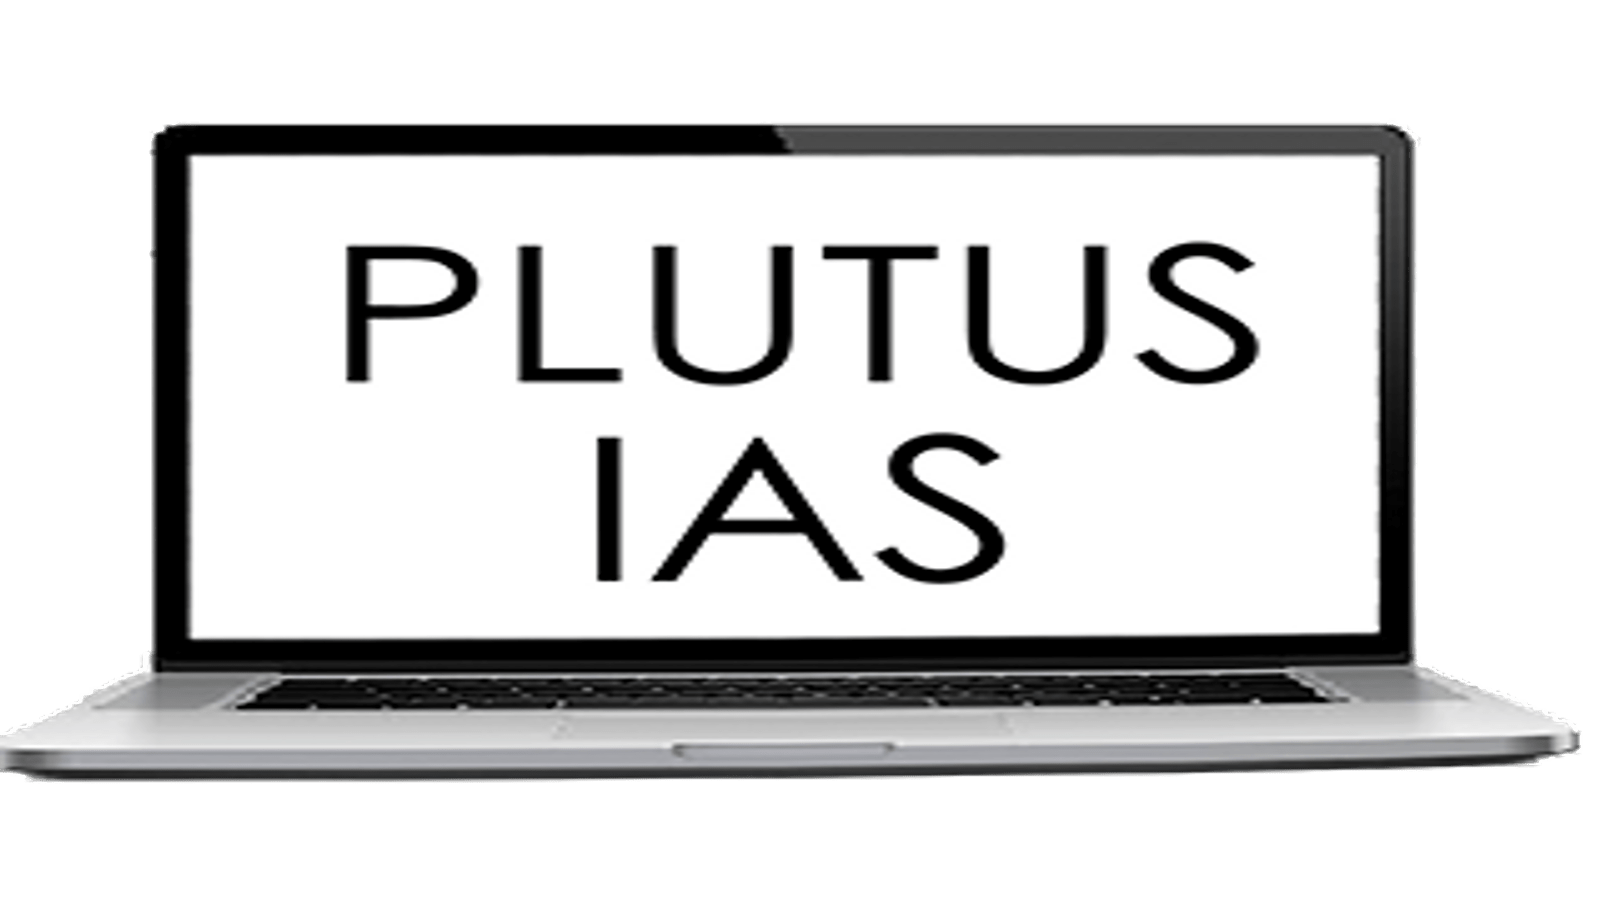 Plutus IAS Online Coaching India